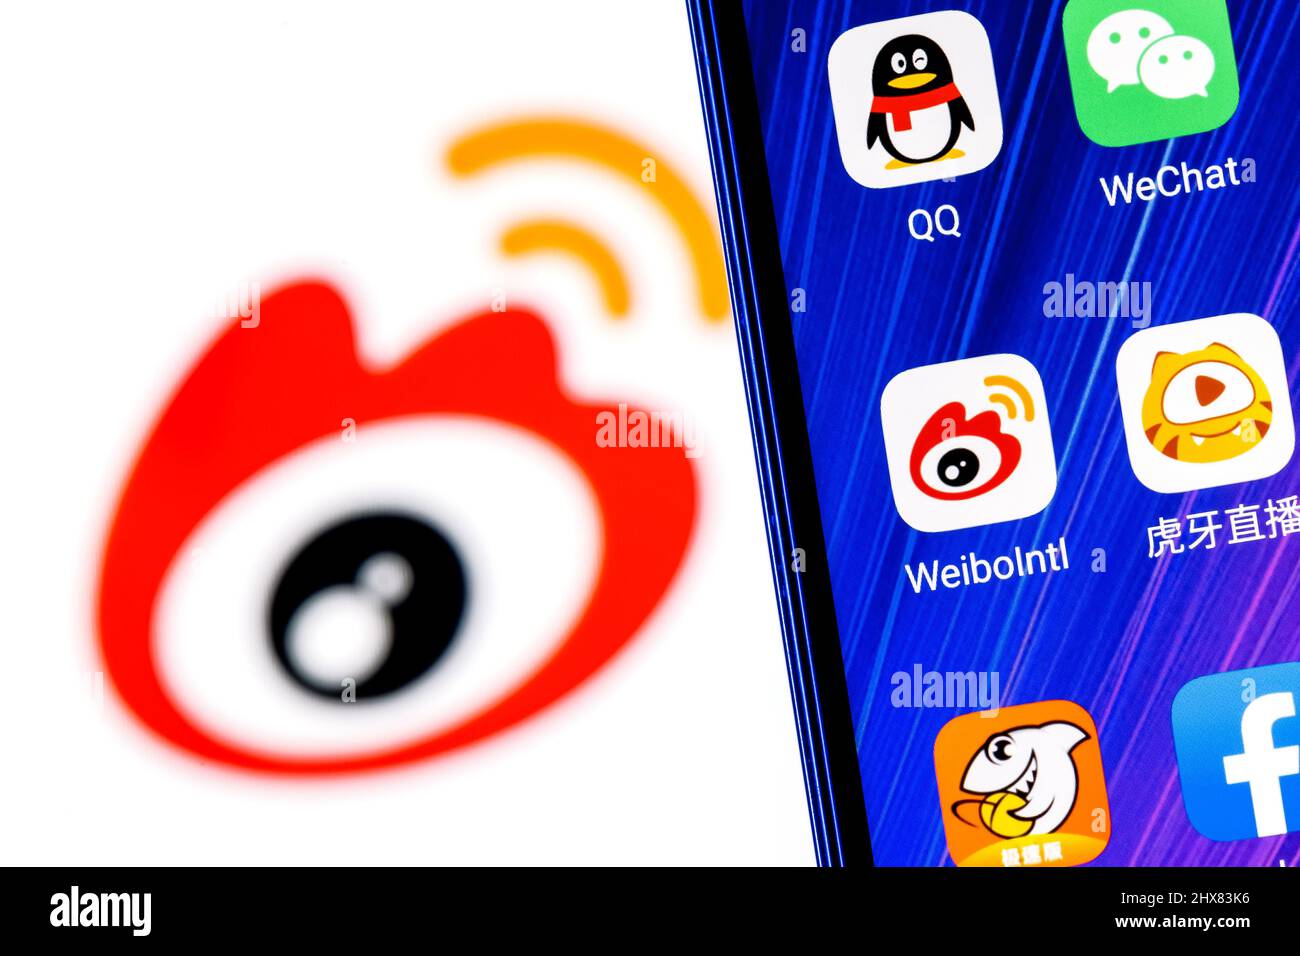 Das Symbol der chinesischen Microblogging-Service-Anwendung Weibo unter anderem auf dem Smartphone-Bildschirm. Auf dem Hintergrund ist das Weibo-Logo zu sehen. Stockfoto